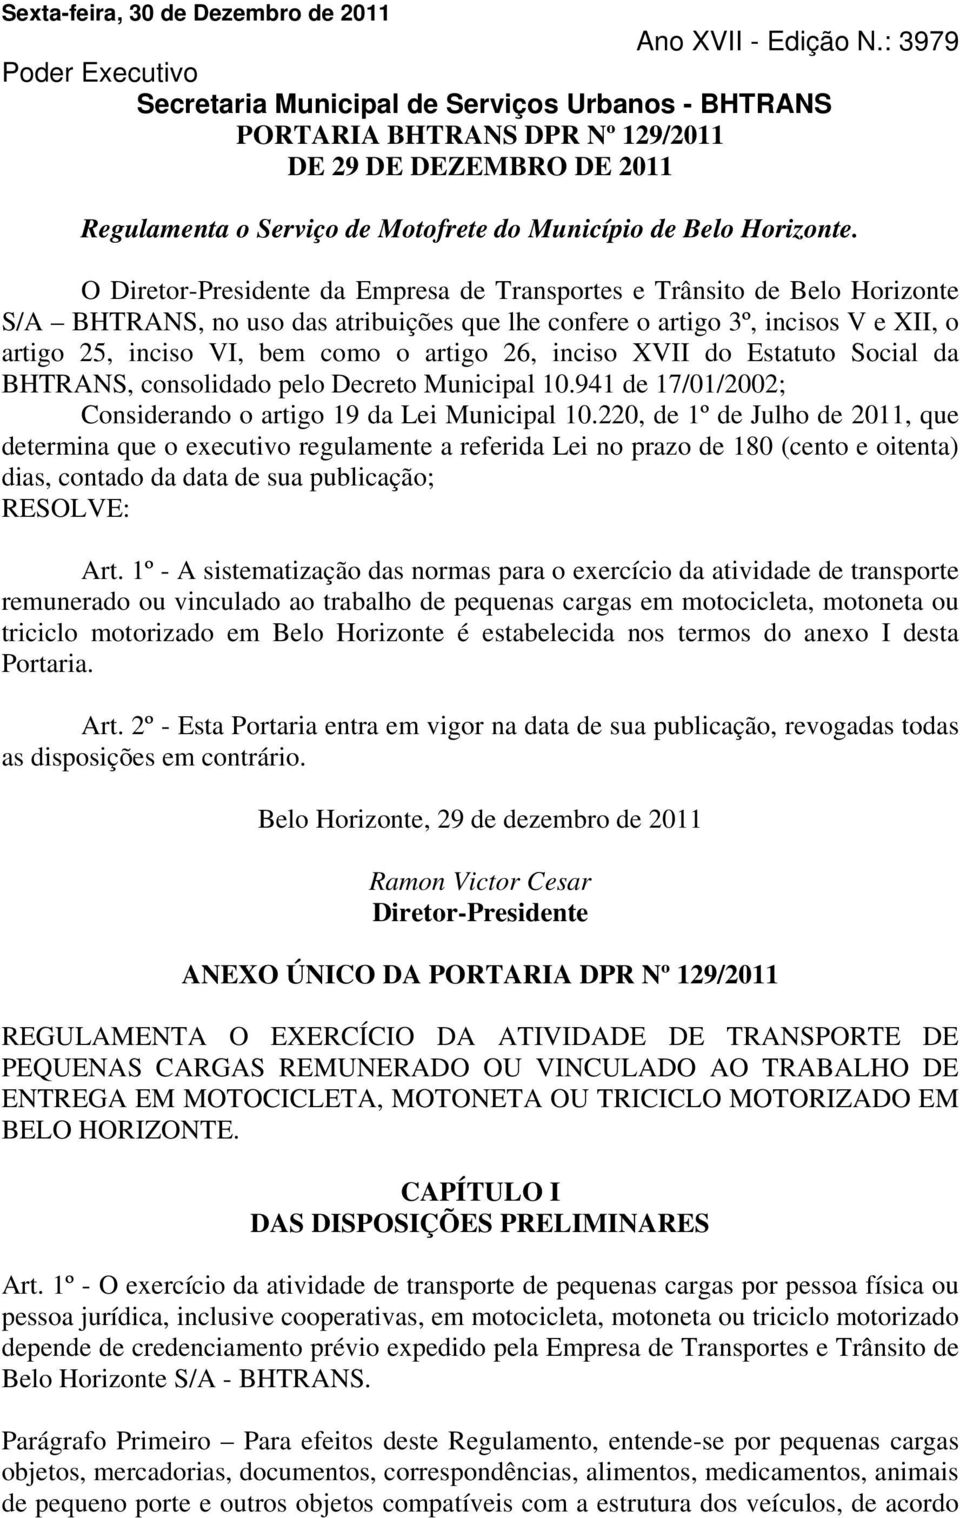 O Diretor-Presidente da Empresa de Transportes e Trânsito de Belo Horizonte S/A BHTRANS, no uso das atribuições que lhe confere o artigo 3º, incisos V e XII, o artigo 25, inciso VI, bem como o artigo